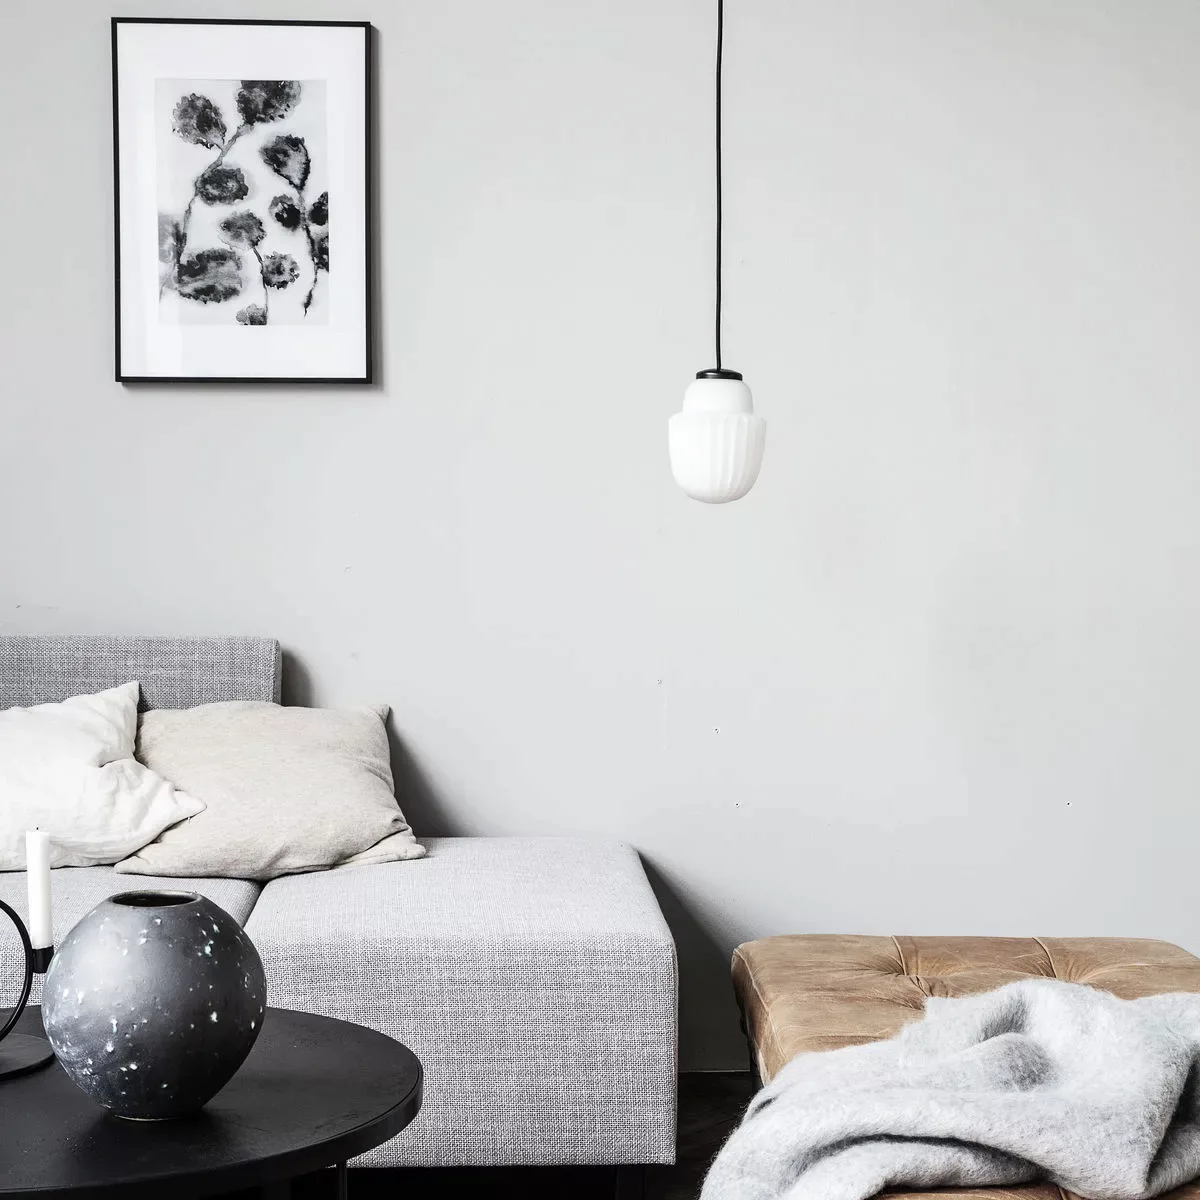 Lampe Acorn in Weiß aus Metall und Glas günstig online kaufen